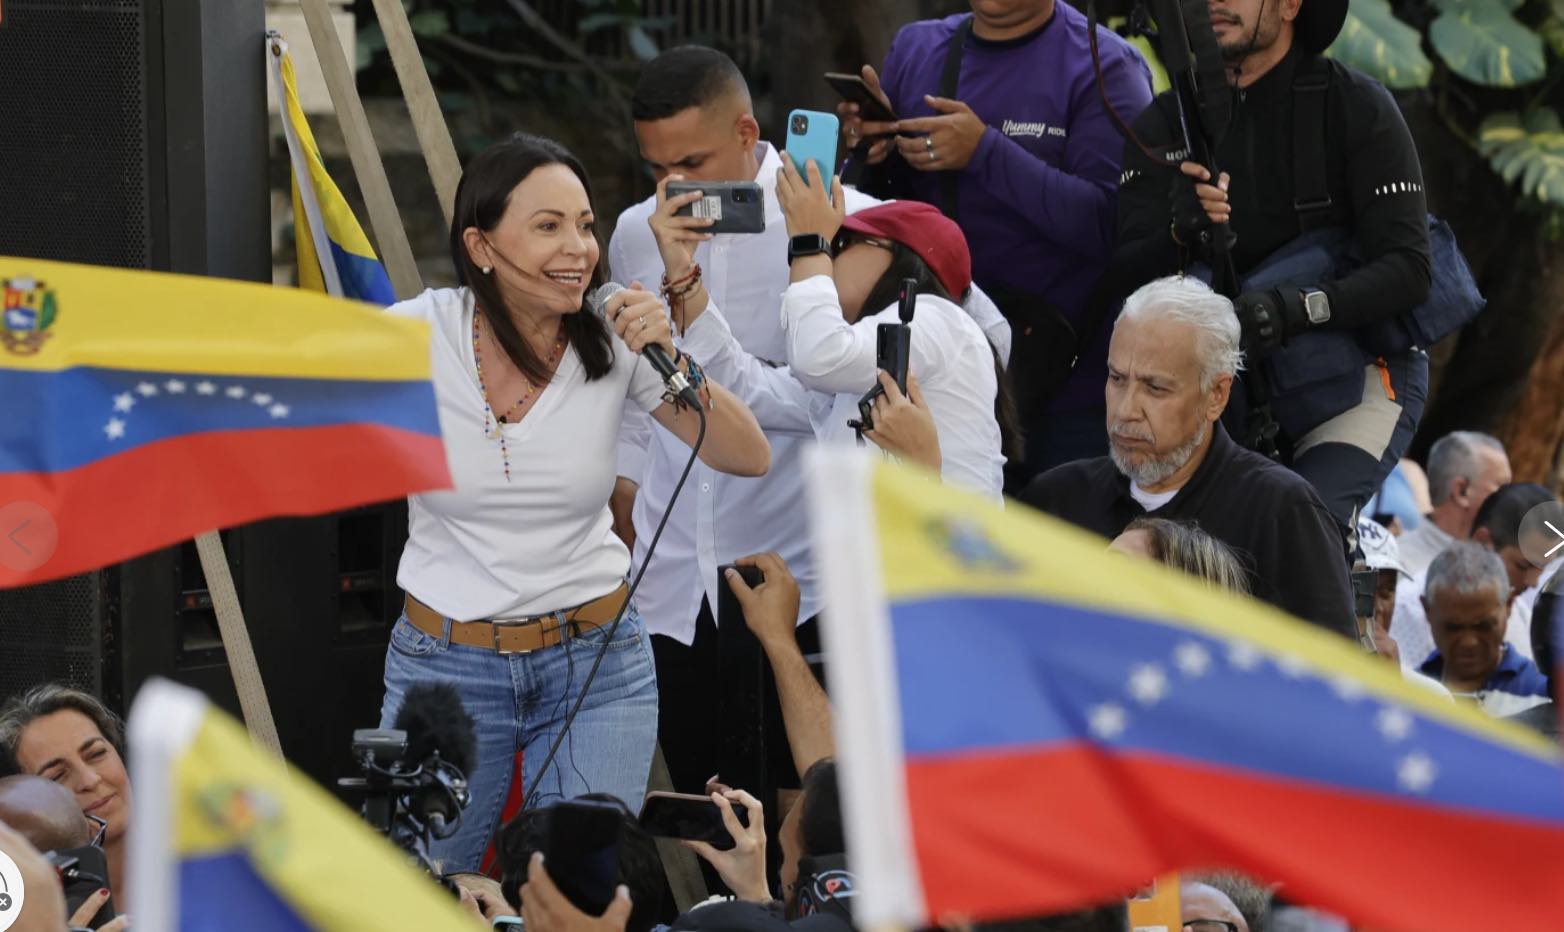 Maria Corina Machado al chavismo: No nos van a sacar de la ruta electoral, mano ganada no se tranca.